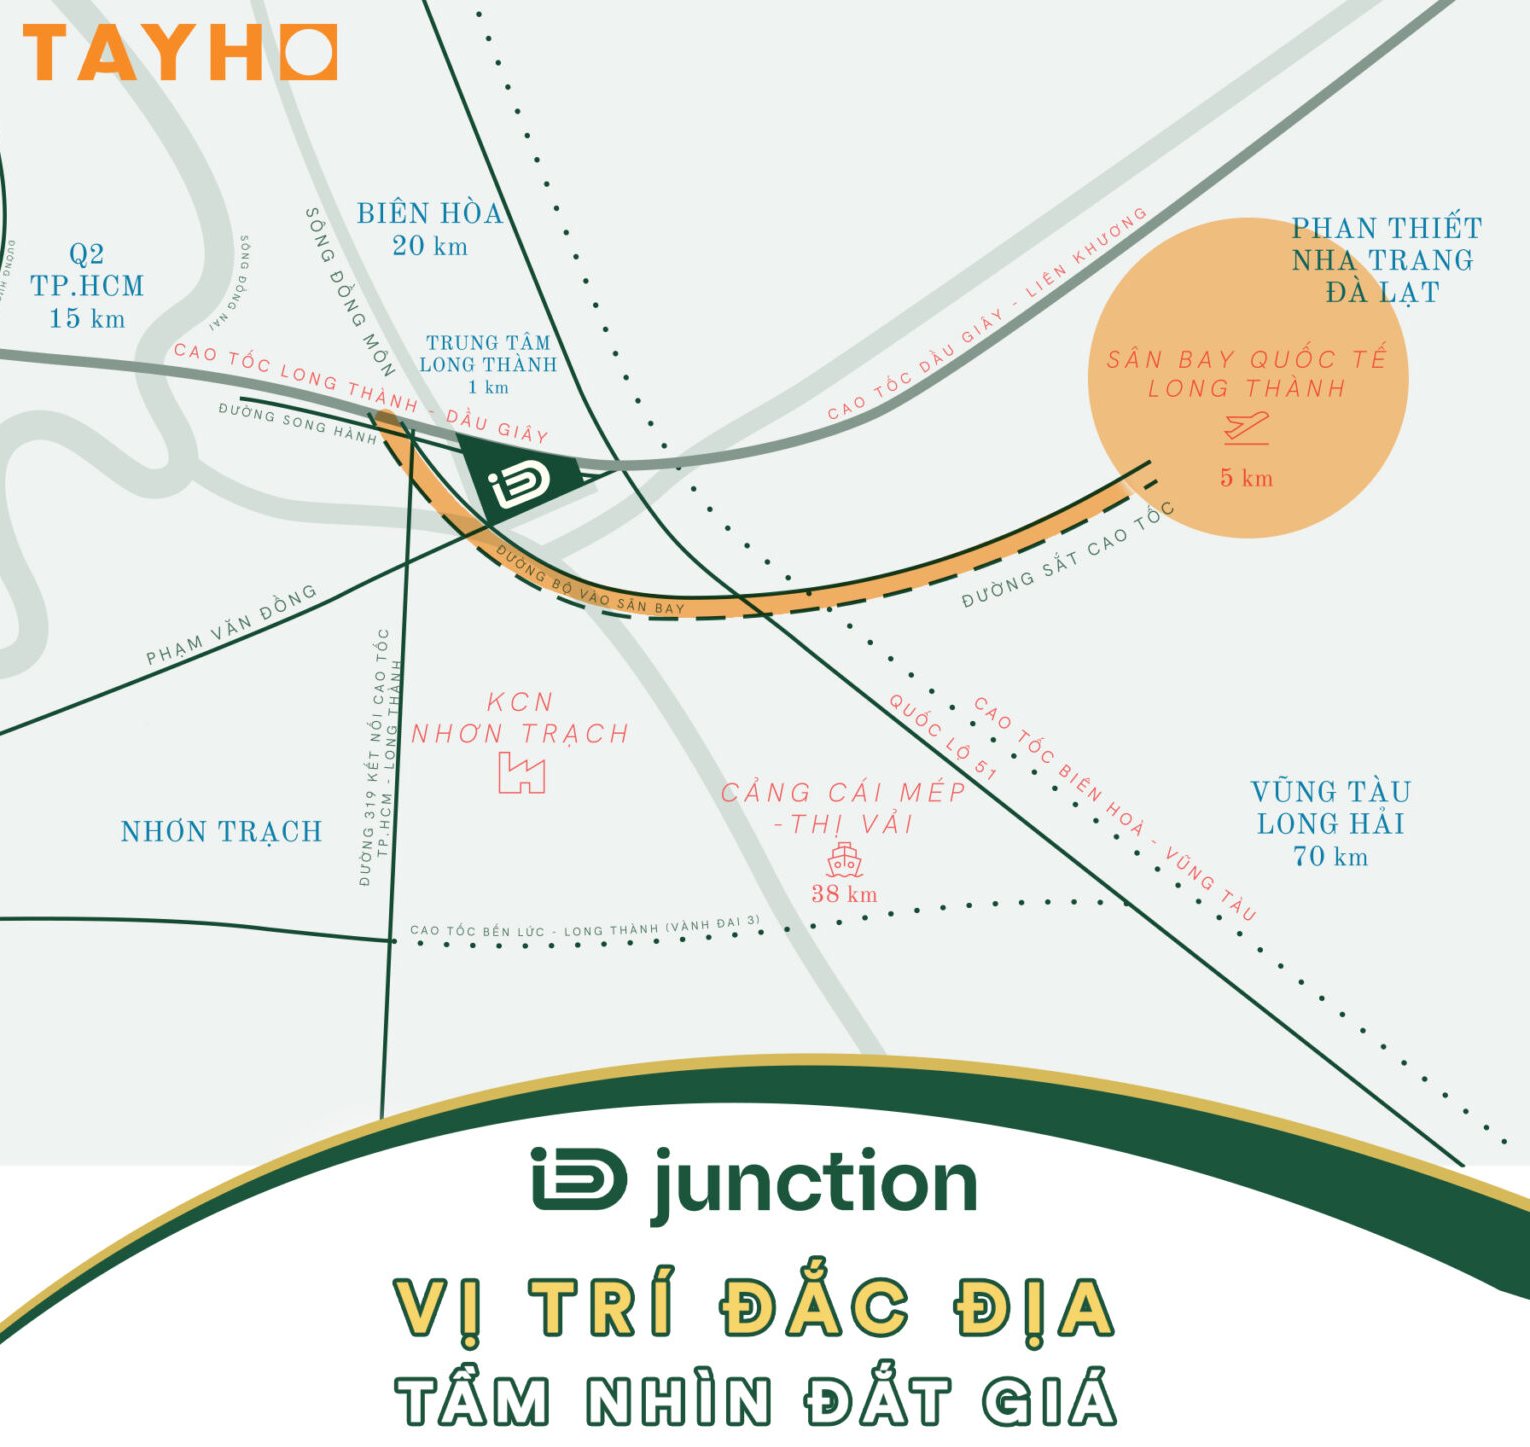 Vị trí “tam giác vàng logistics” của khu đô thị iD Junction là vị trí đắc địa duy nhất tại Long Thành hiện nay